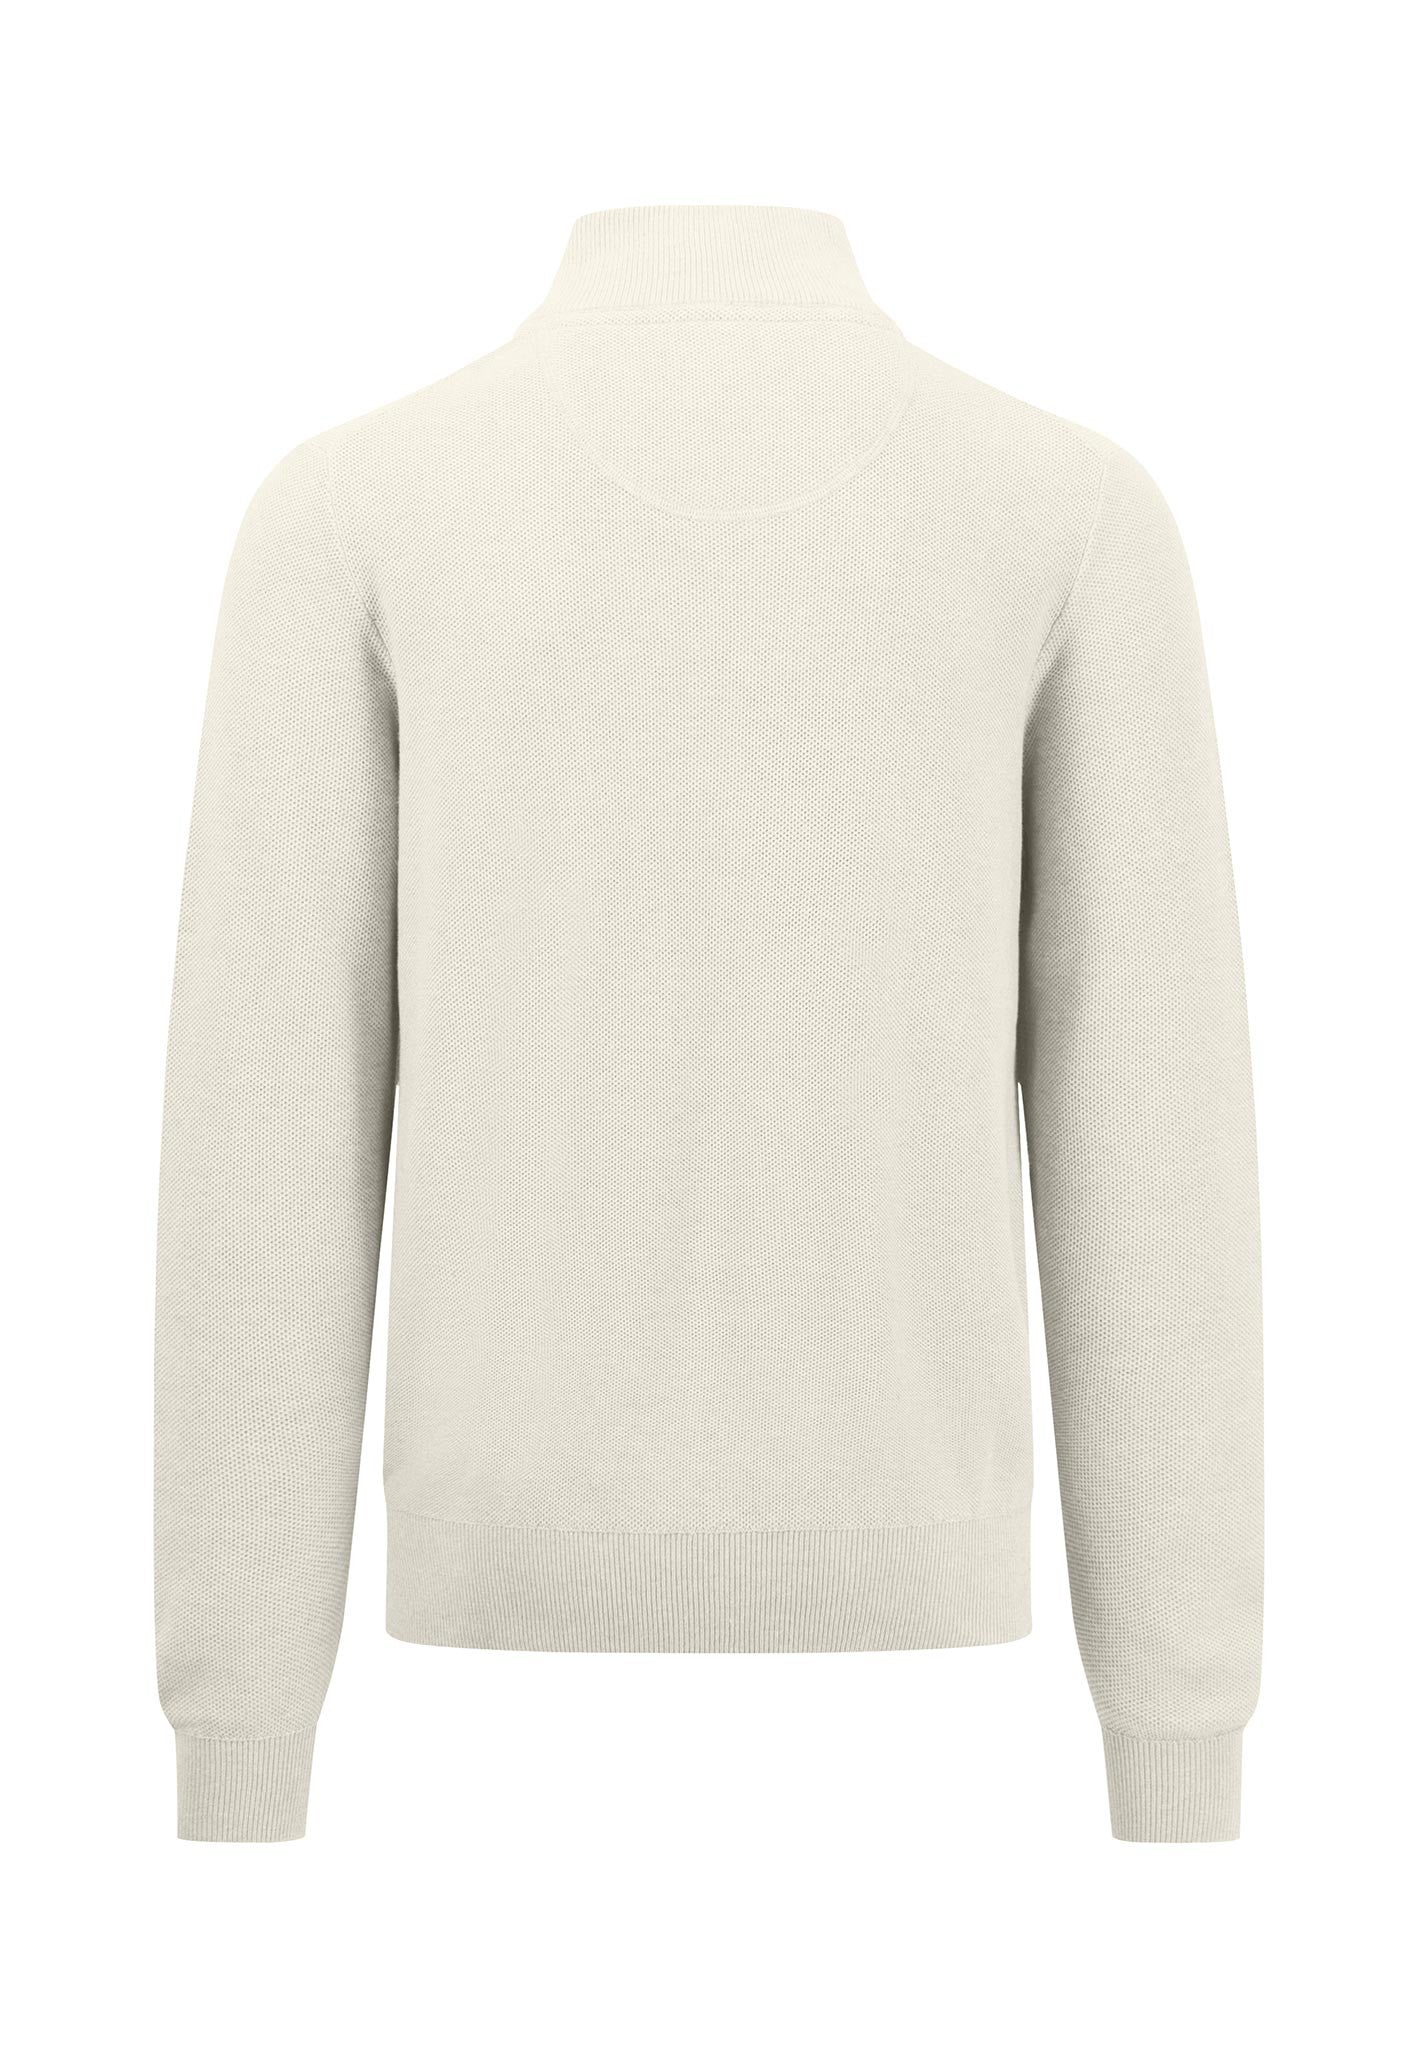 Fynch Hatton Superfine Cotton Half Zip Sweater Off White